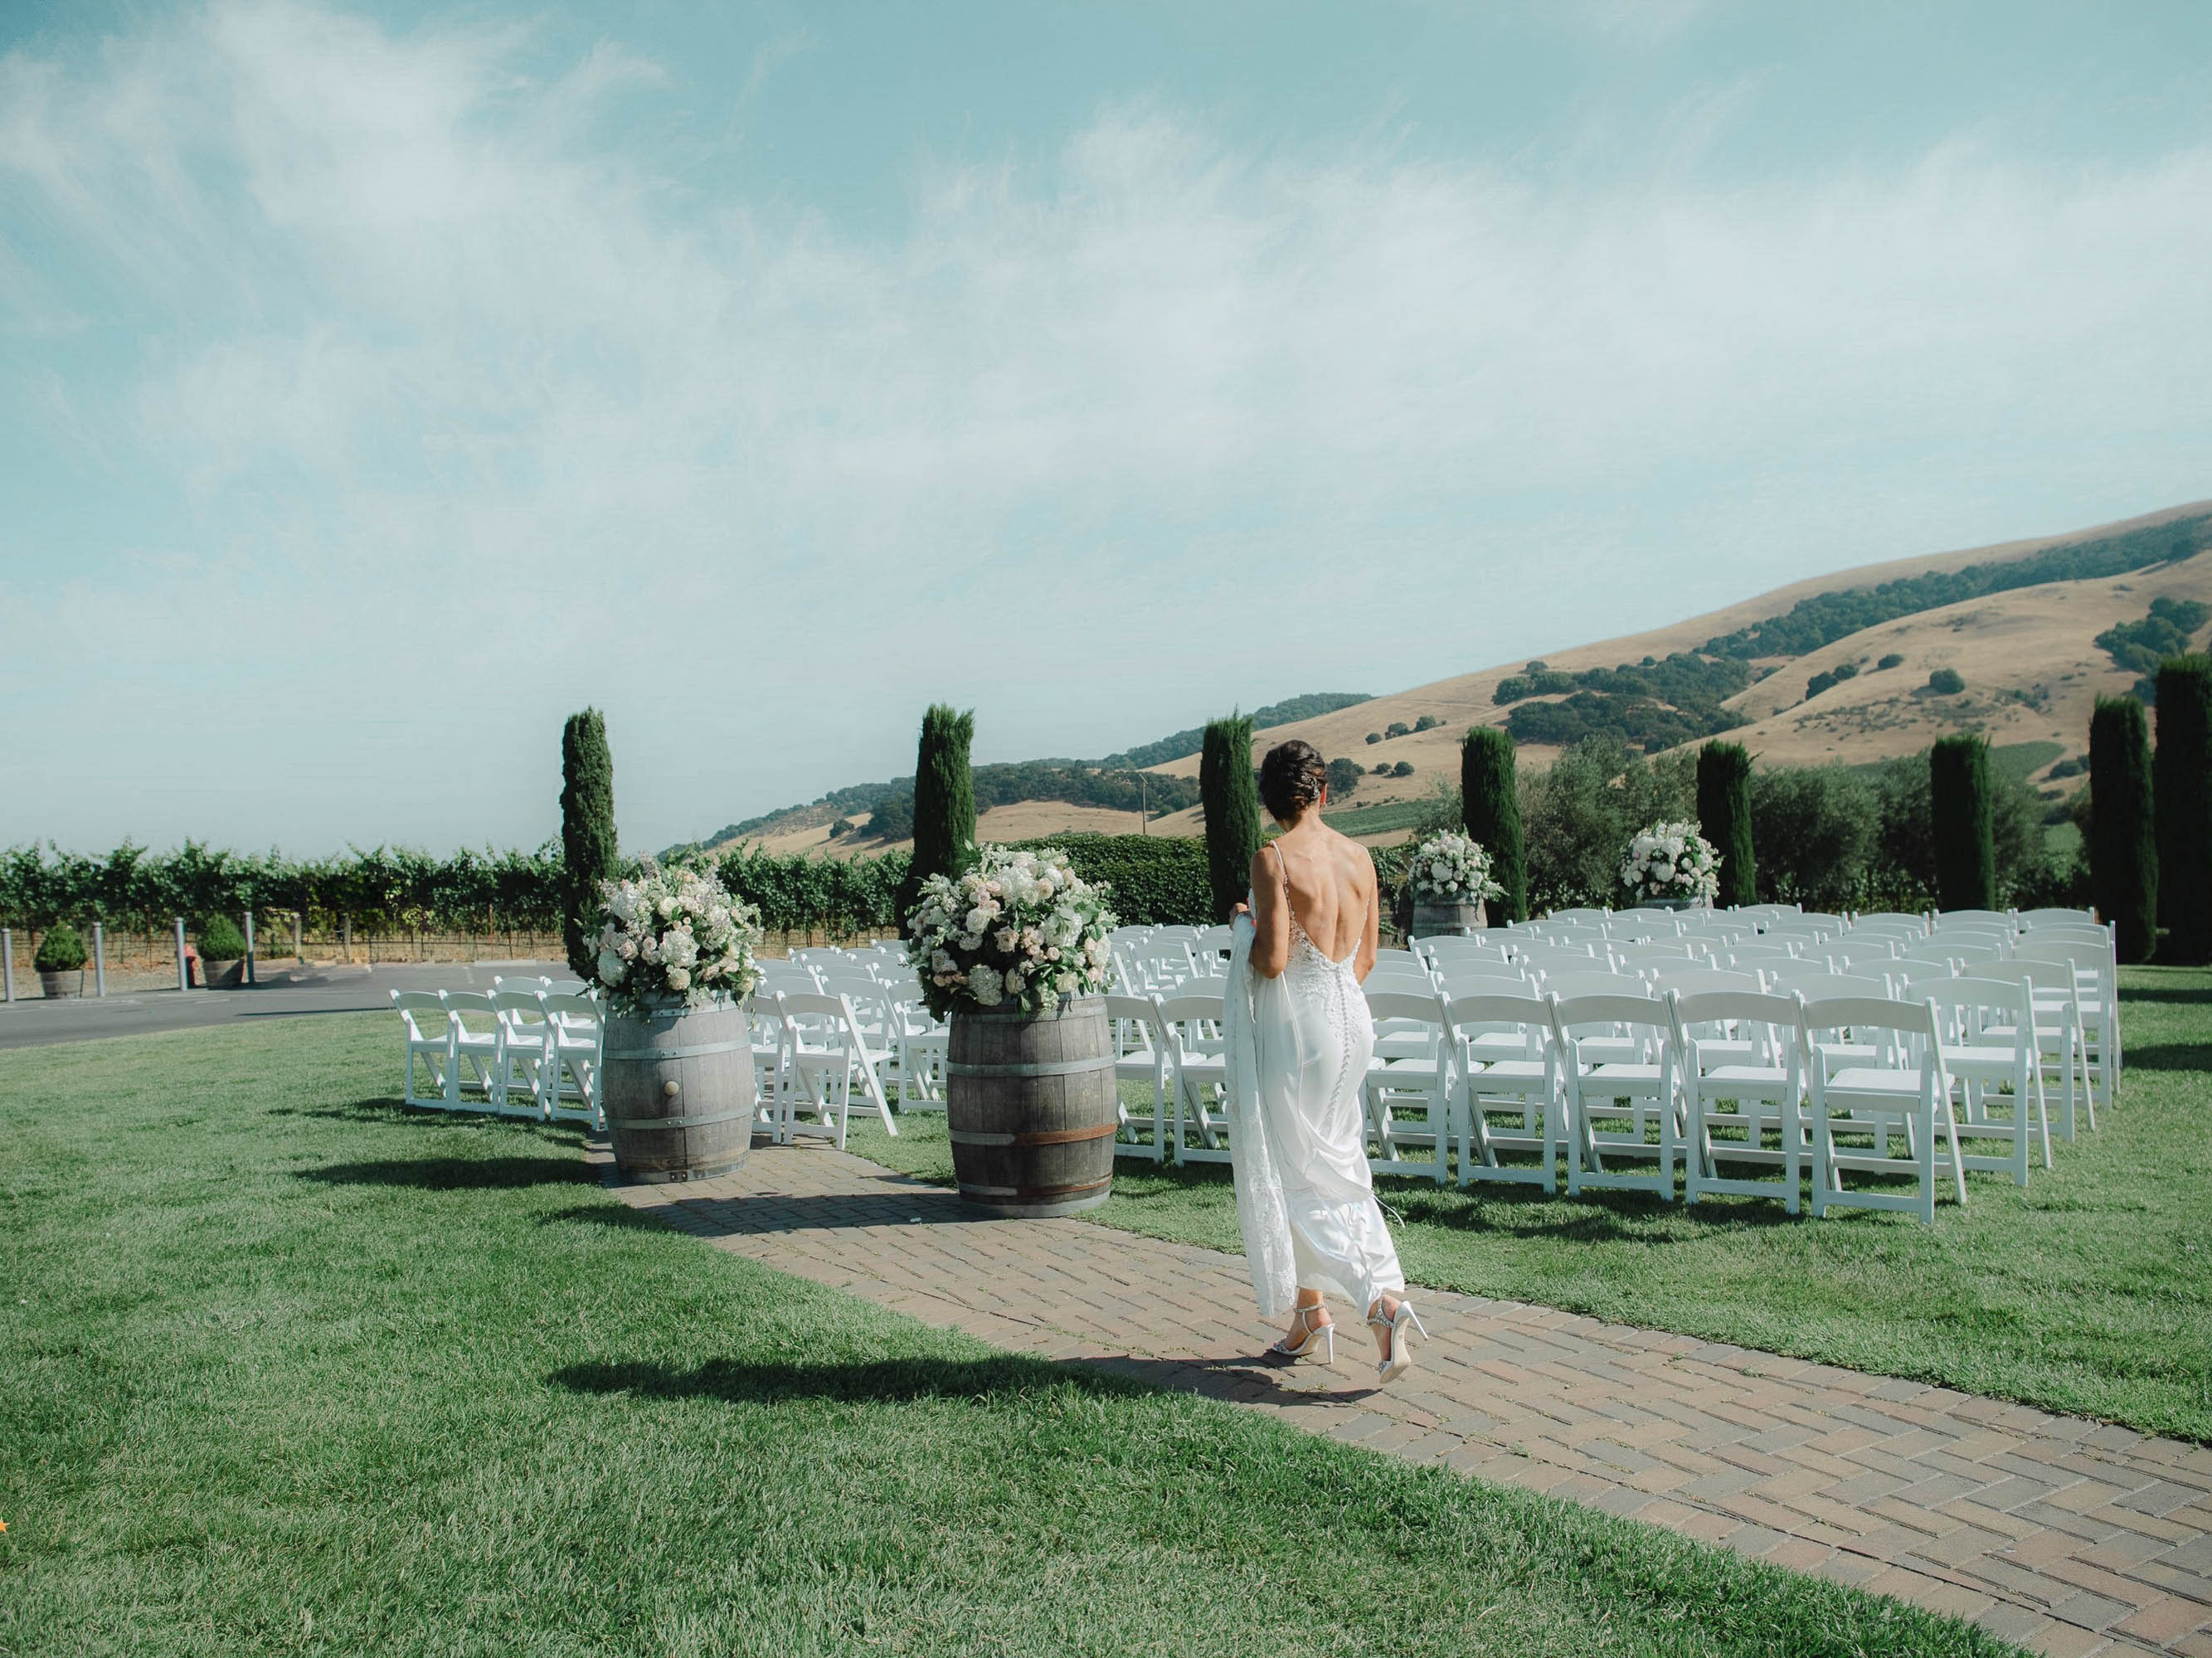 A bride walks down the aisle at a vineyard wedding.